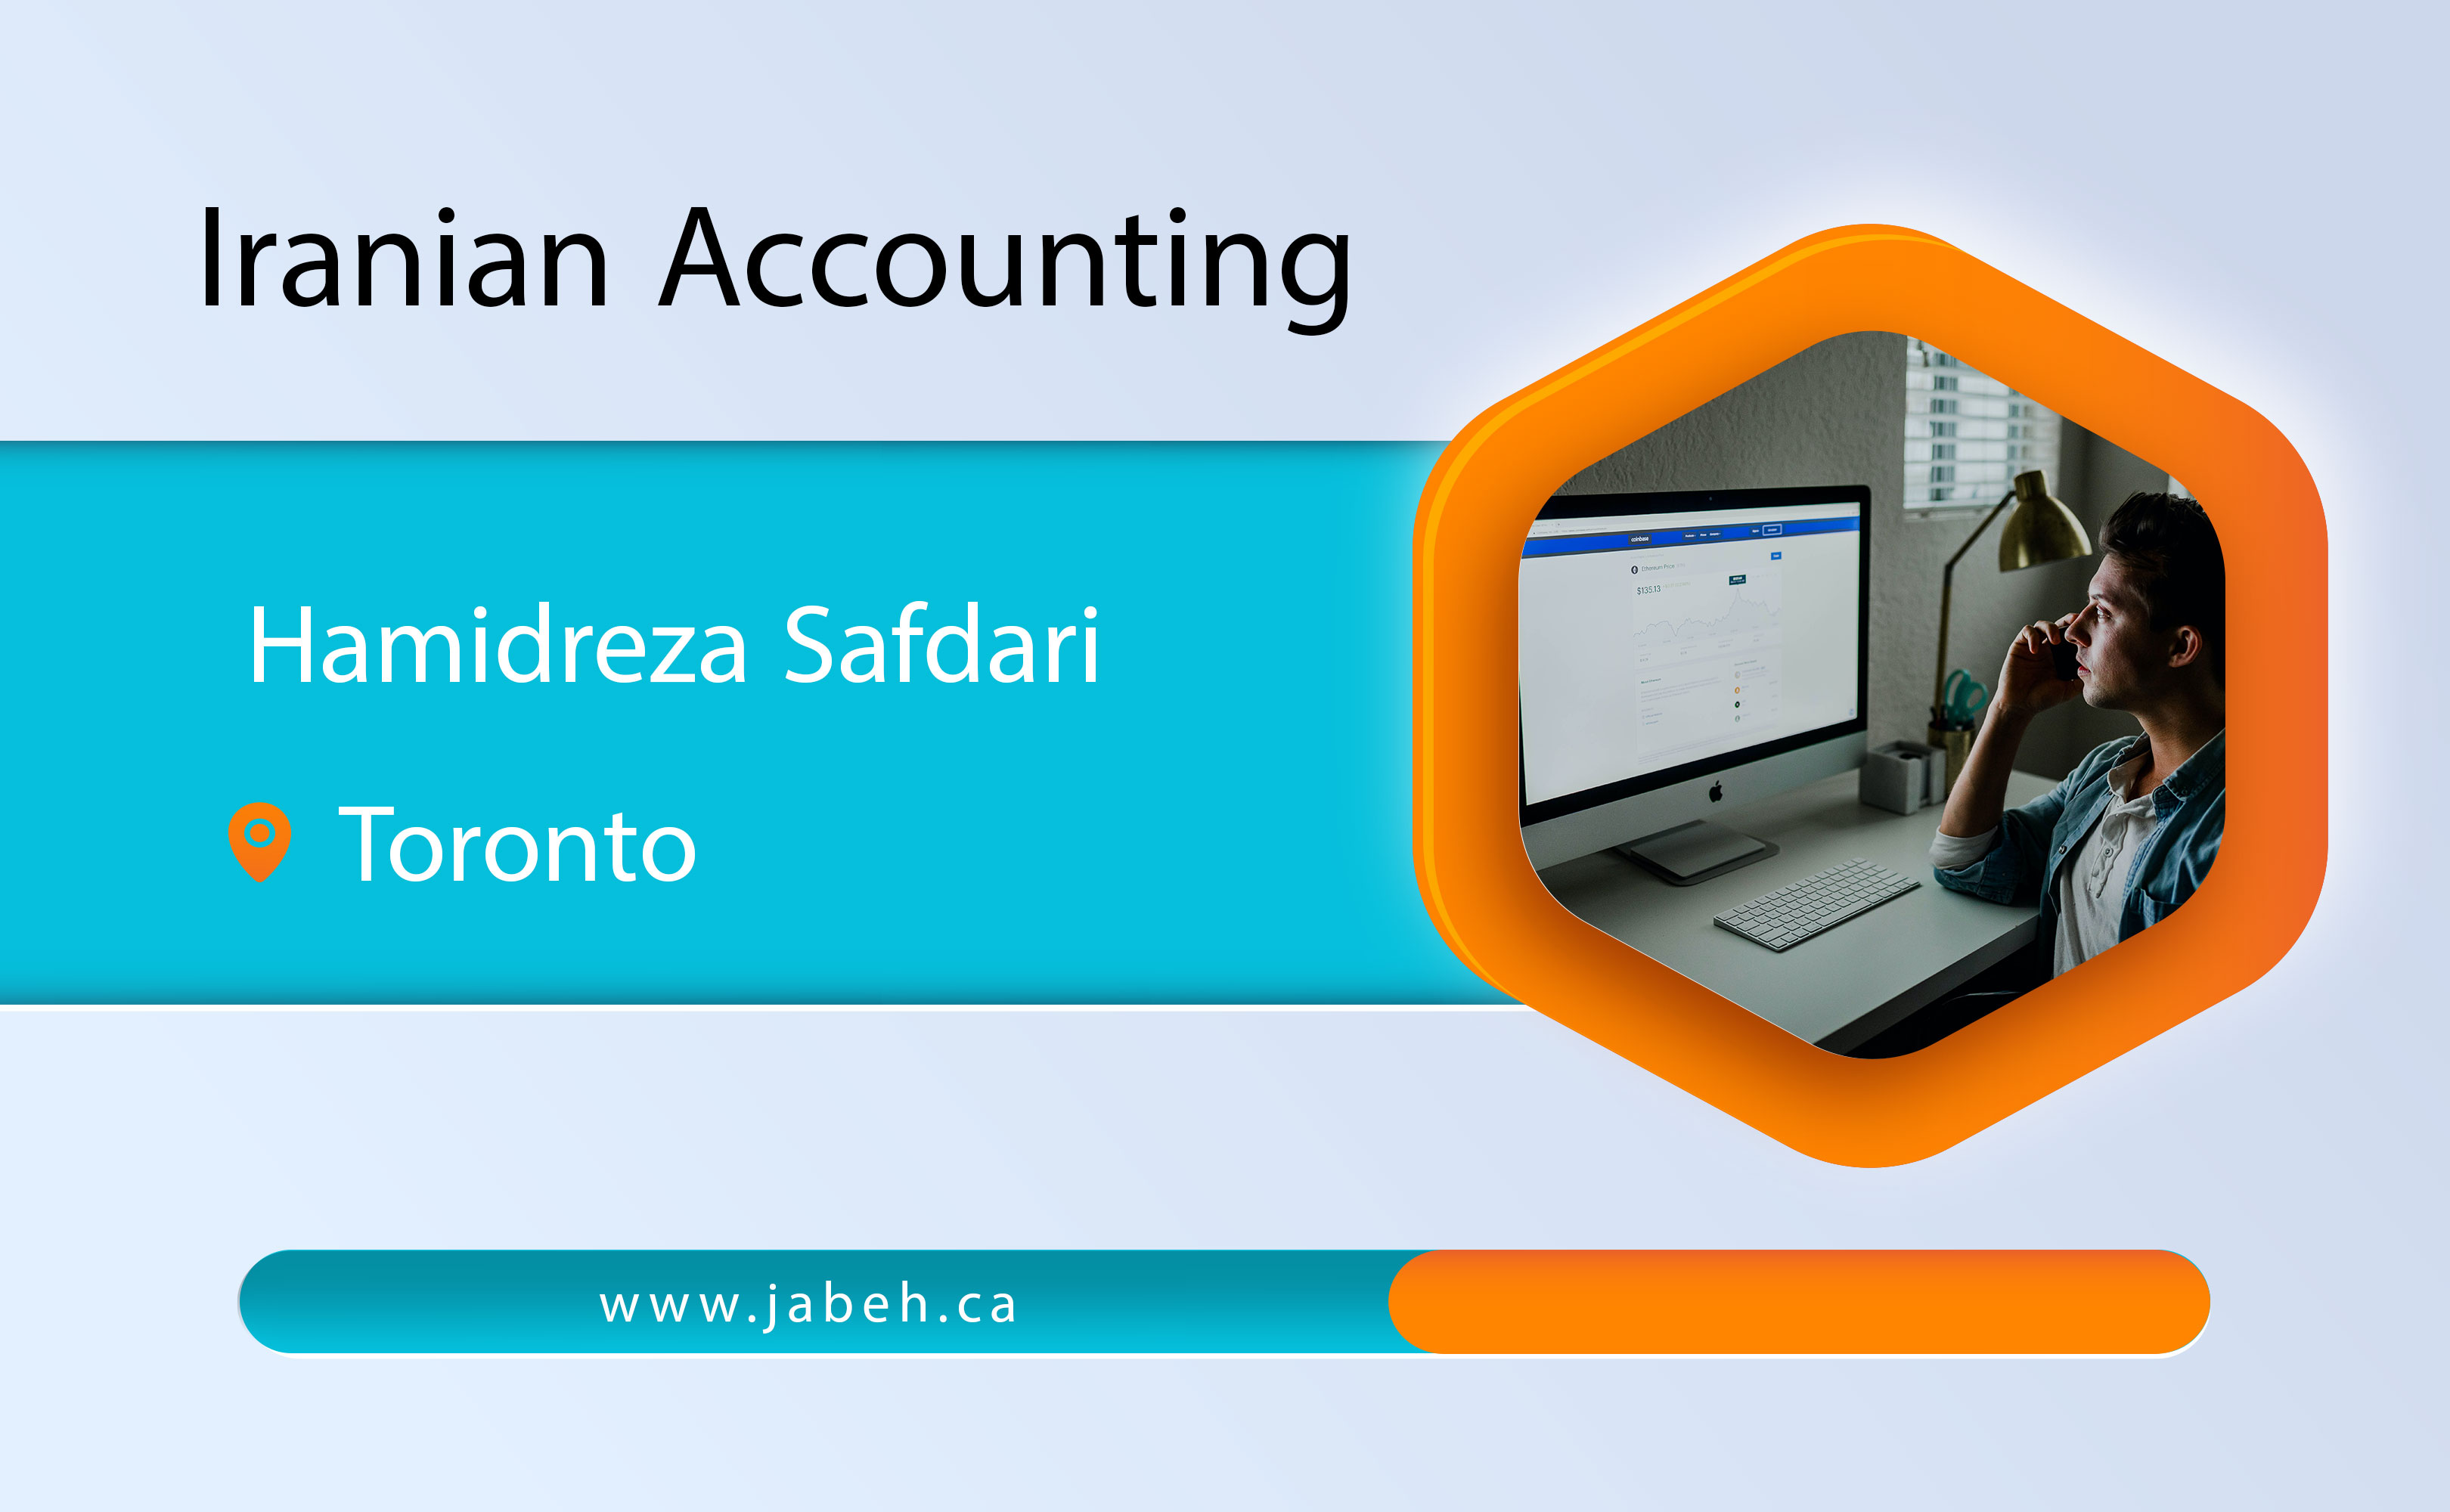 Iranian accounting company Hamidreza Safdari in Toronto